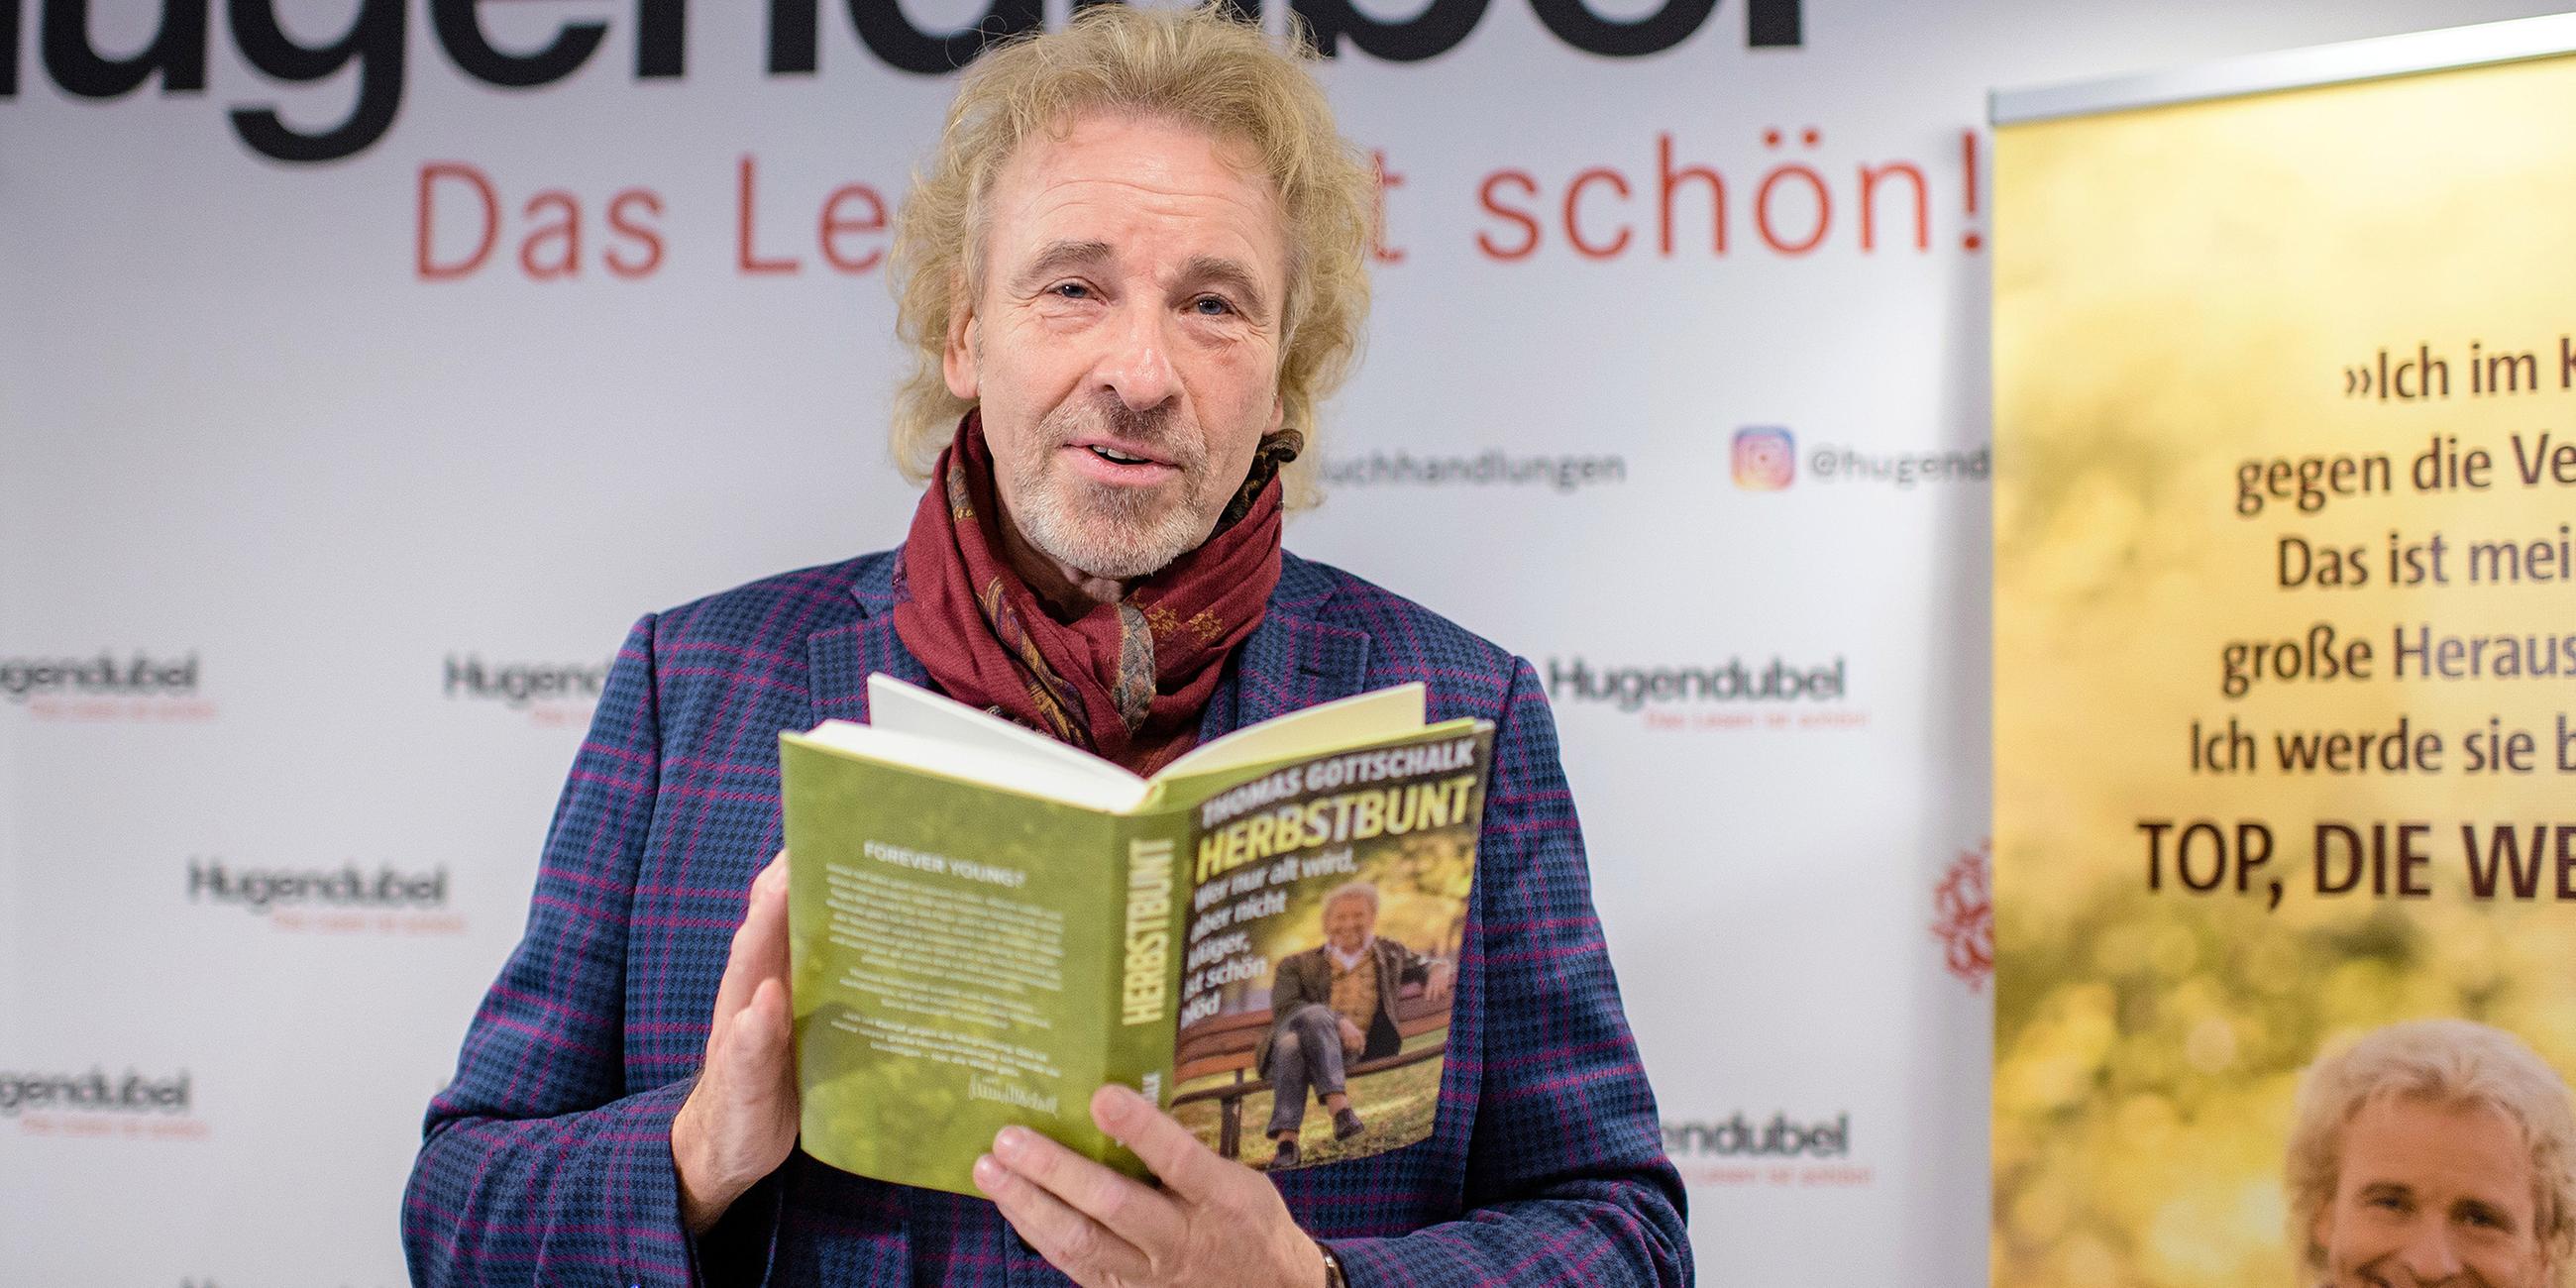 Gottschalk veröffentlicht 2019 seine Autobiografie "Herbstbunt".